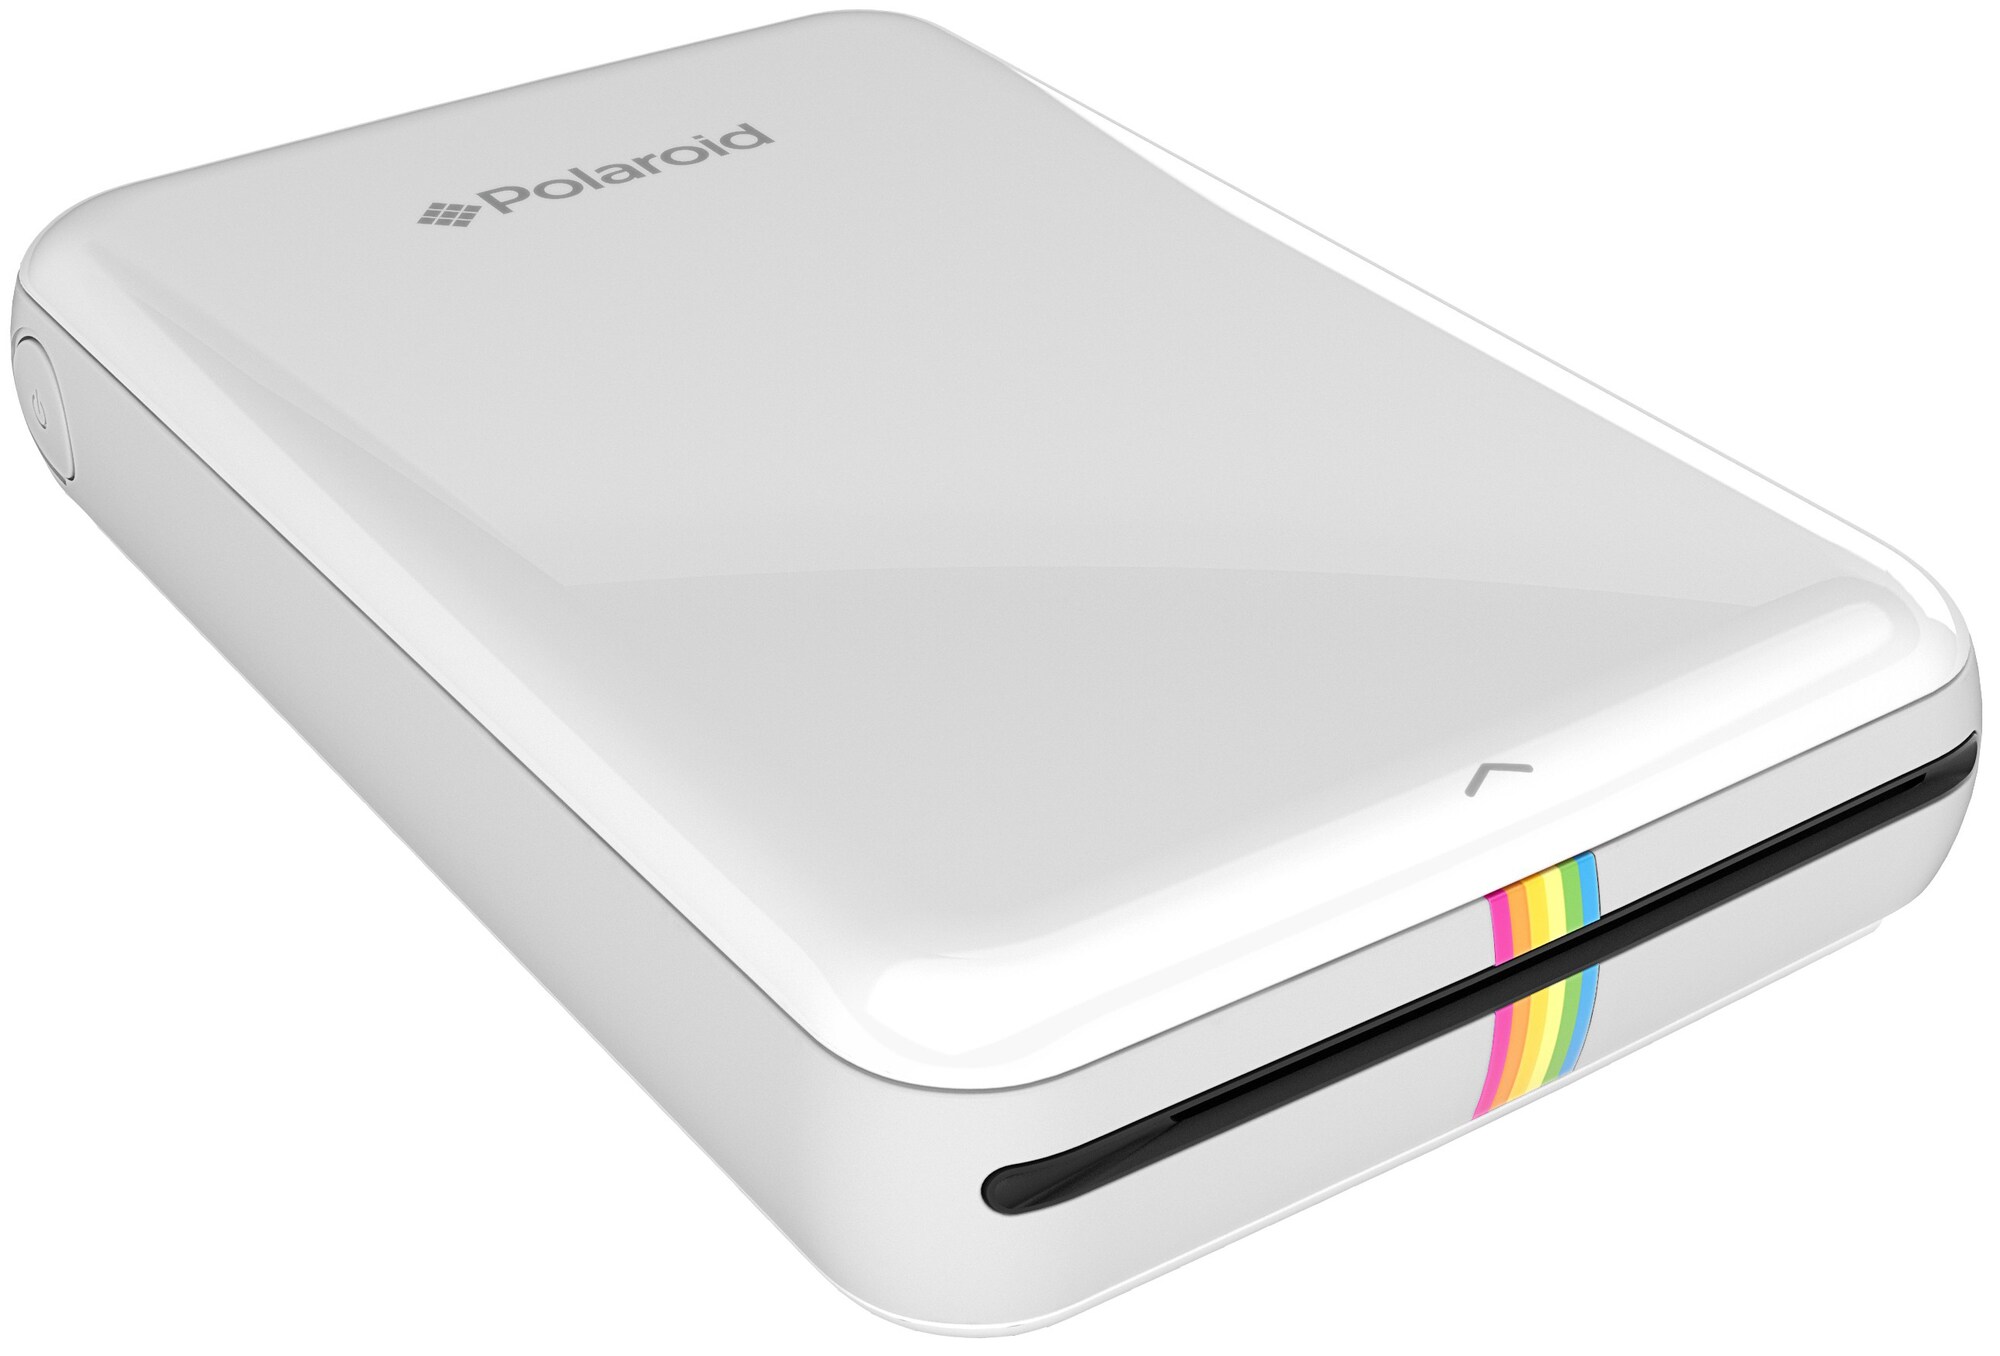 Polaroid Zip mobiilitulostin (valkoinen) - Gigantti verkkokauppa